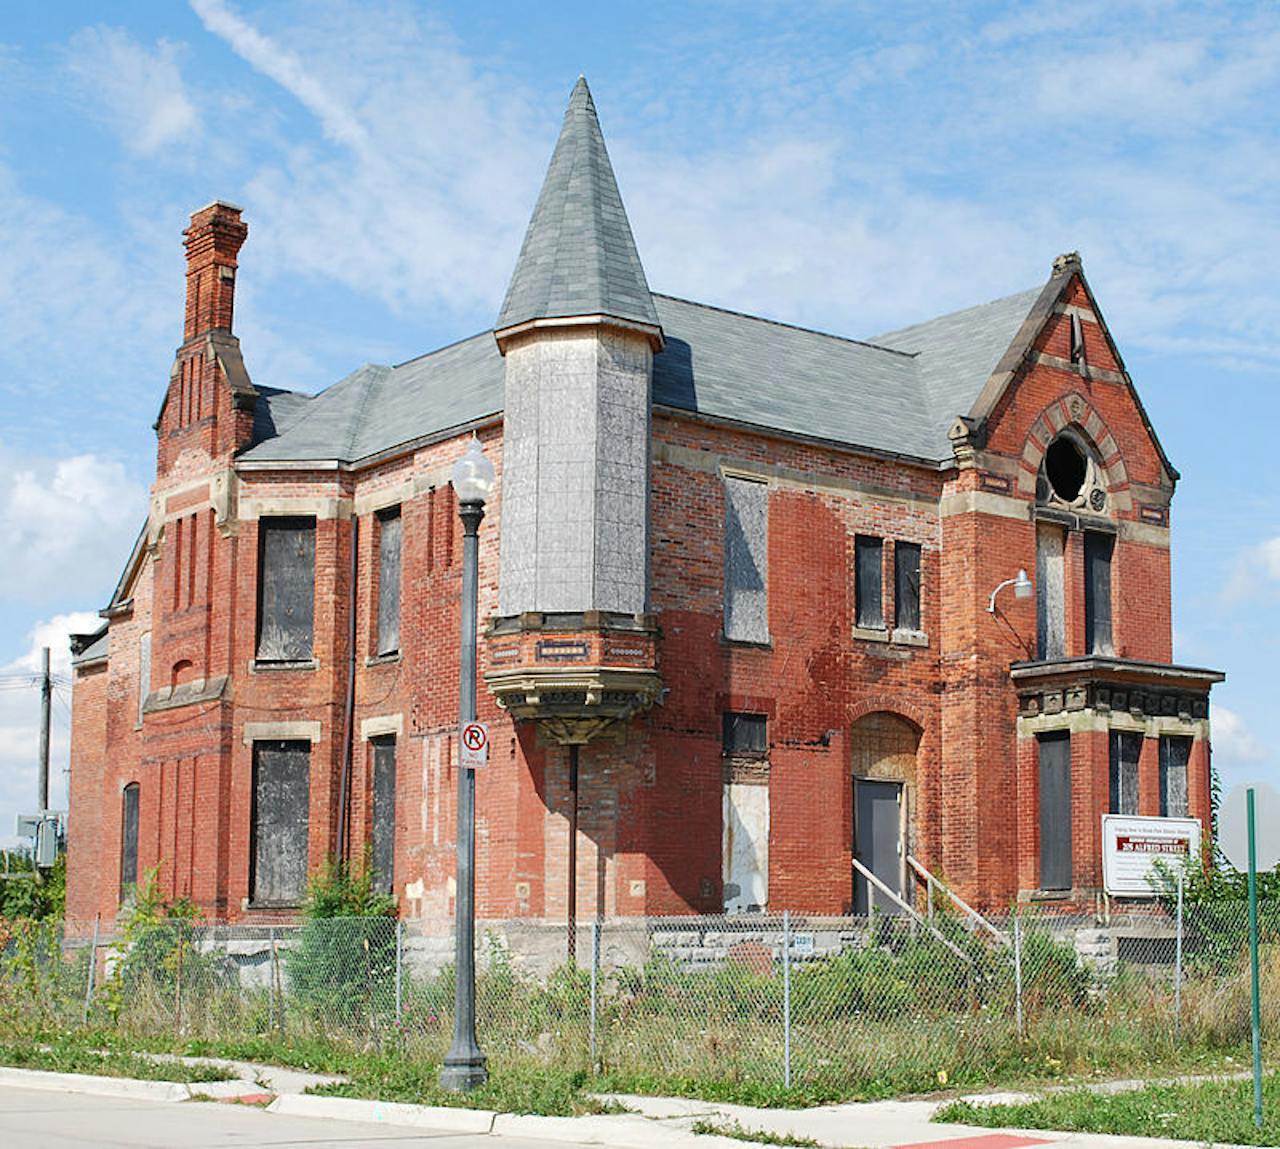 Het historische Ransom Gillis House in Alfred Street 205 in Midtown Detroit, Michigan, in de wijk Brush Park.